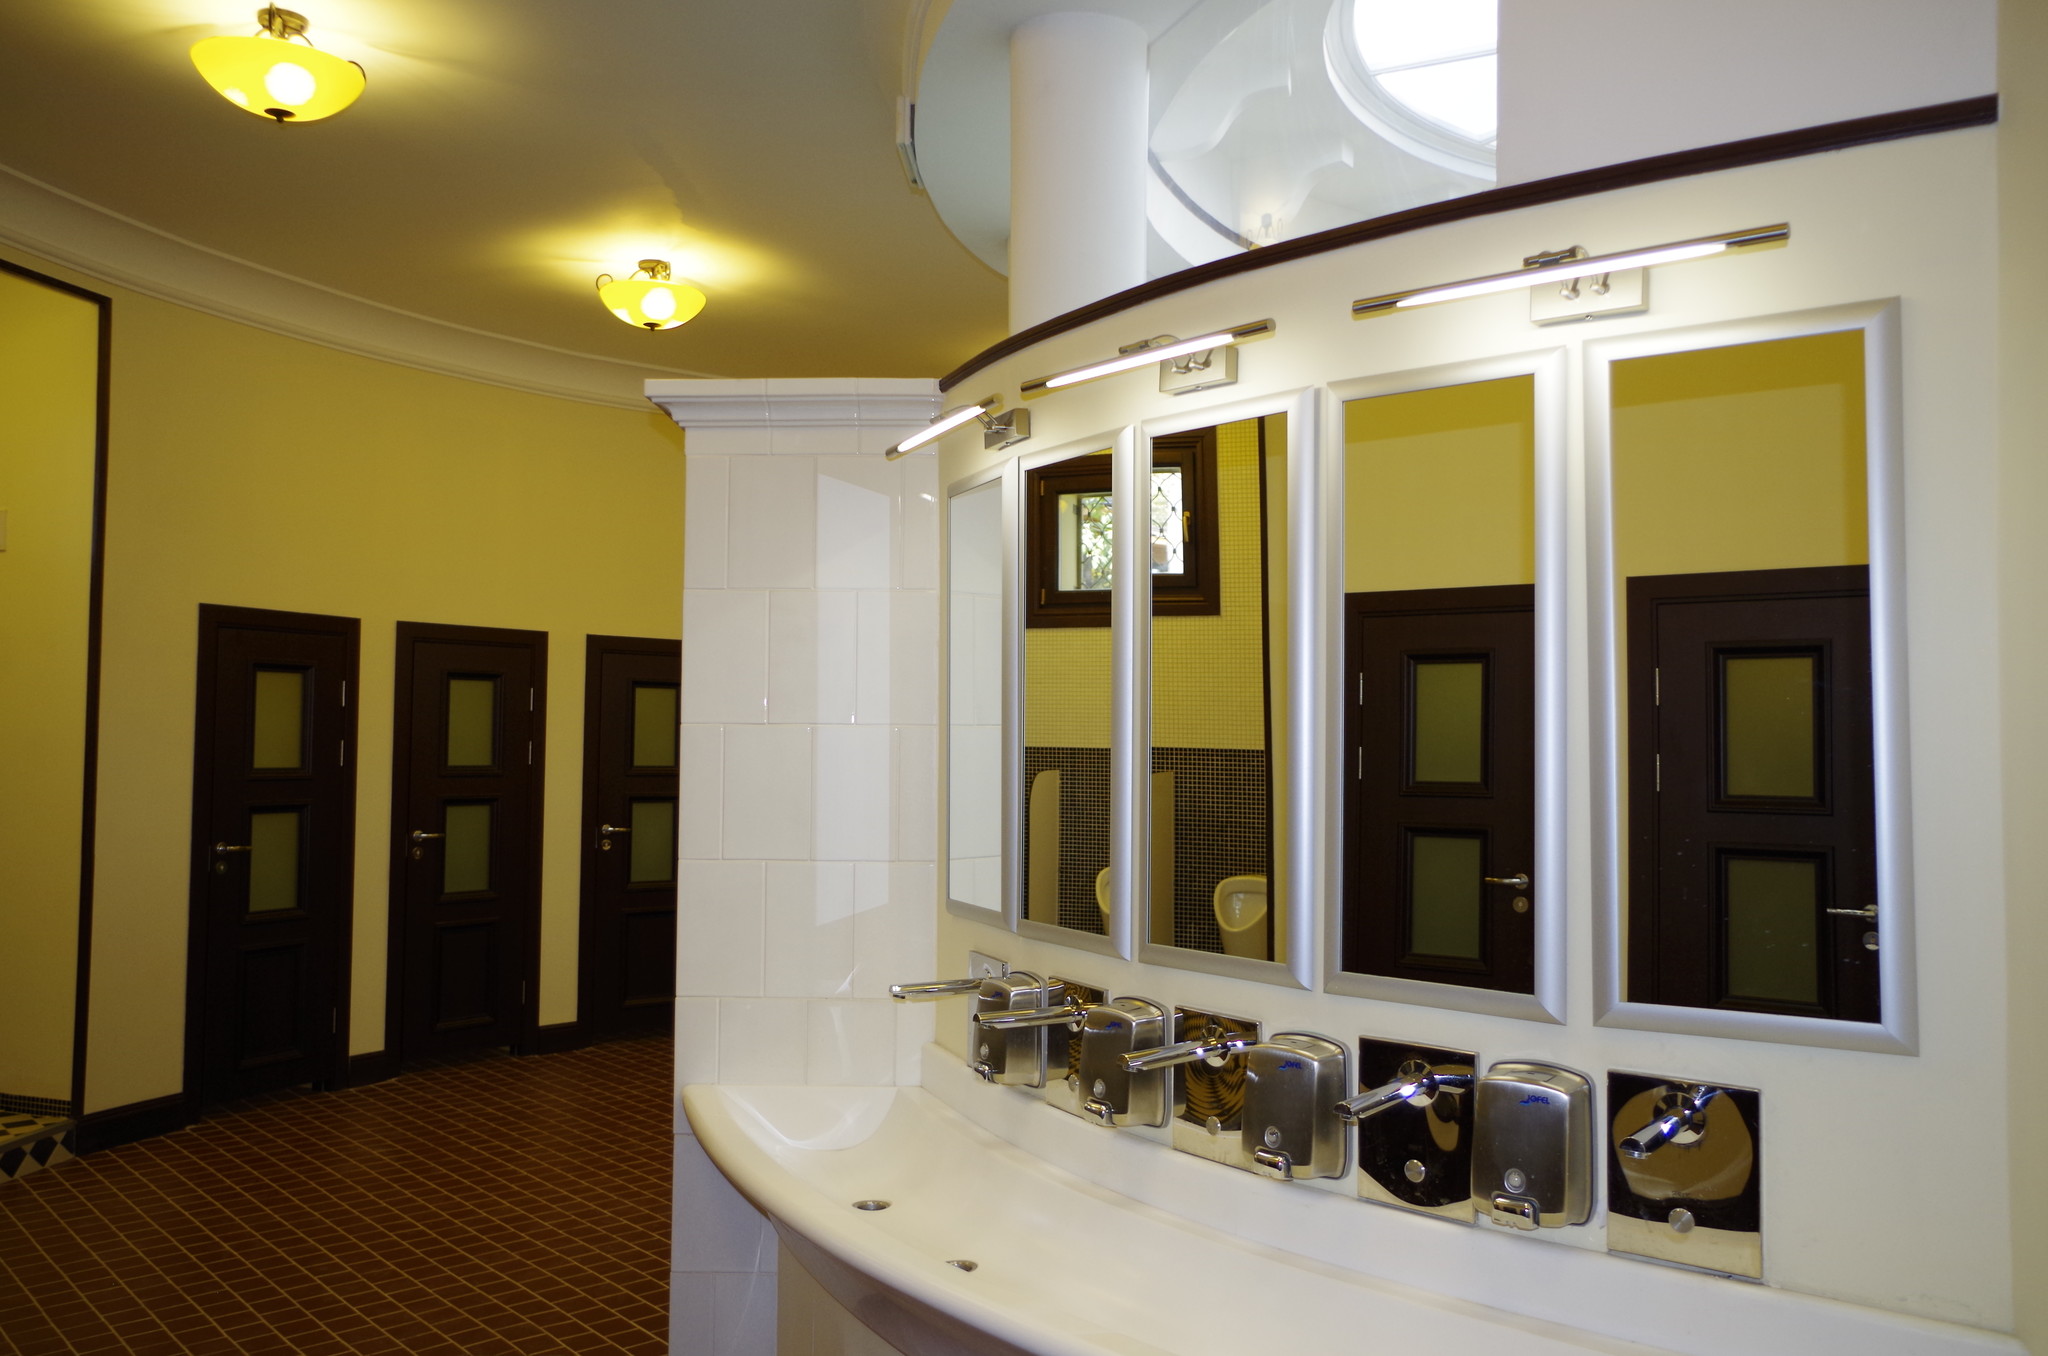 Архитектура по нужде: несколько оригинальных туалетов